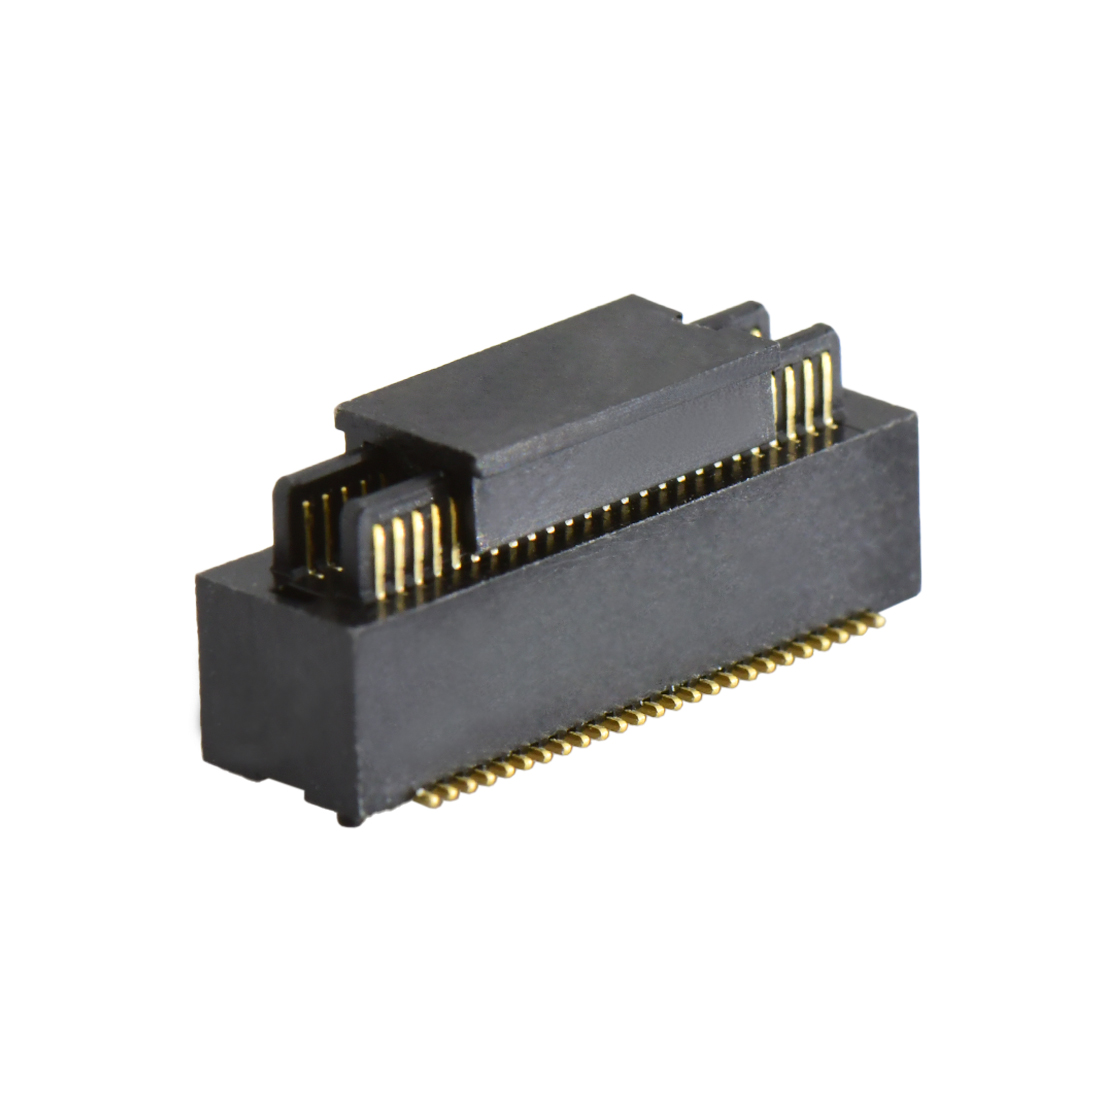 B0502板对板连接器Pitch 0.5 H4.0mm双槽双排 SMT型公座 50Pin黑色 Gold flash